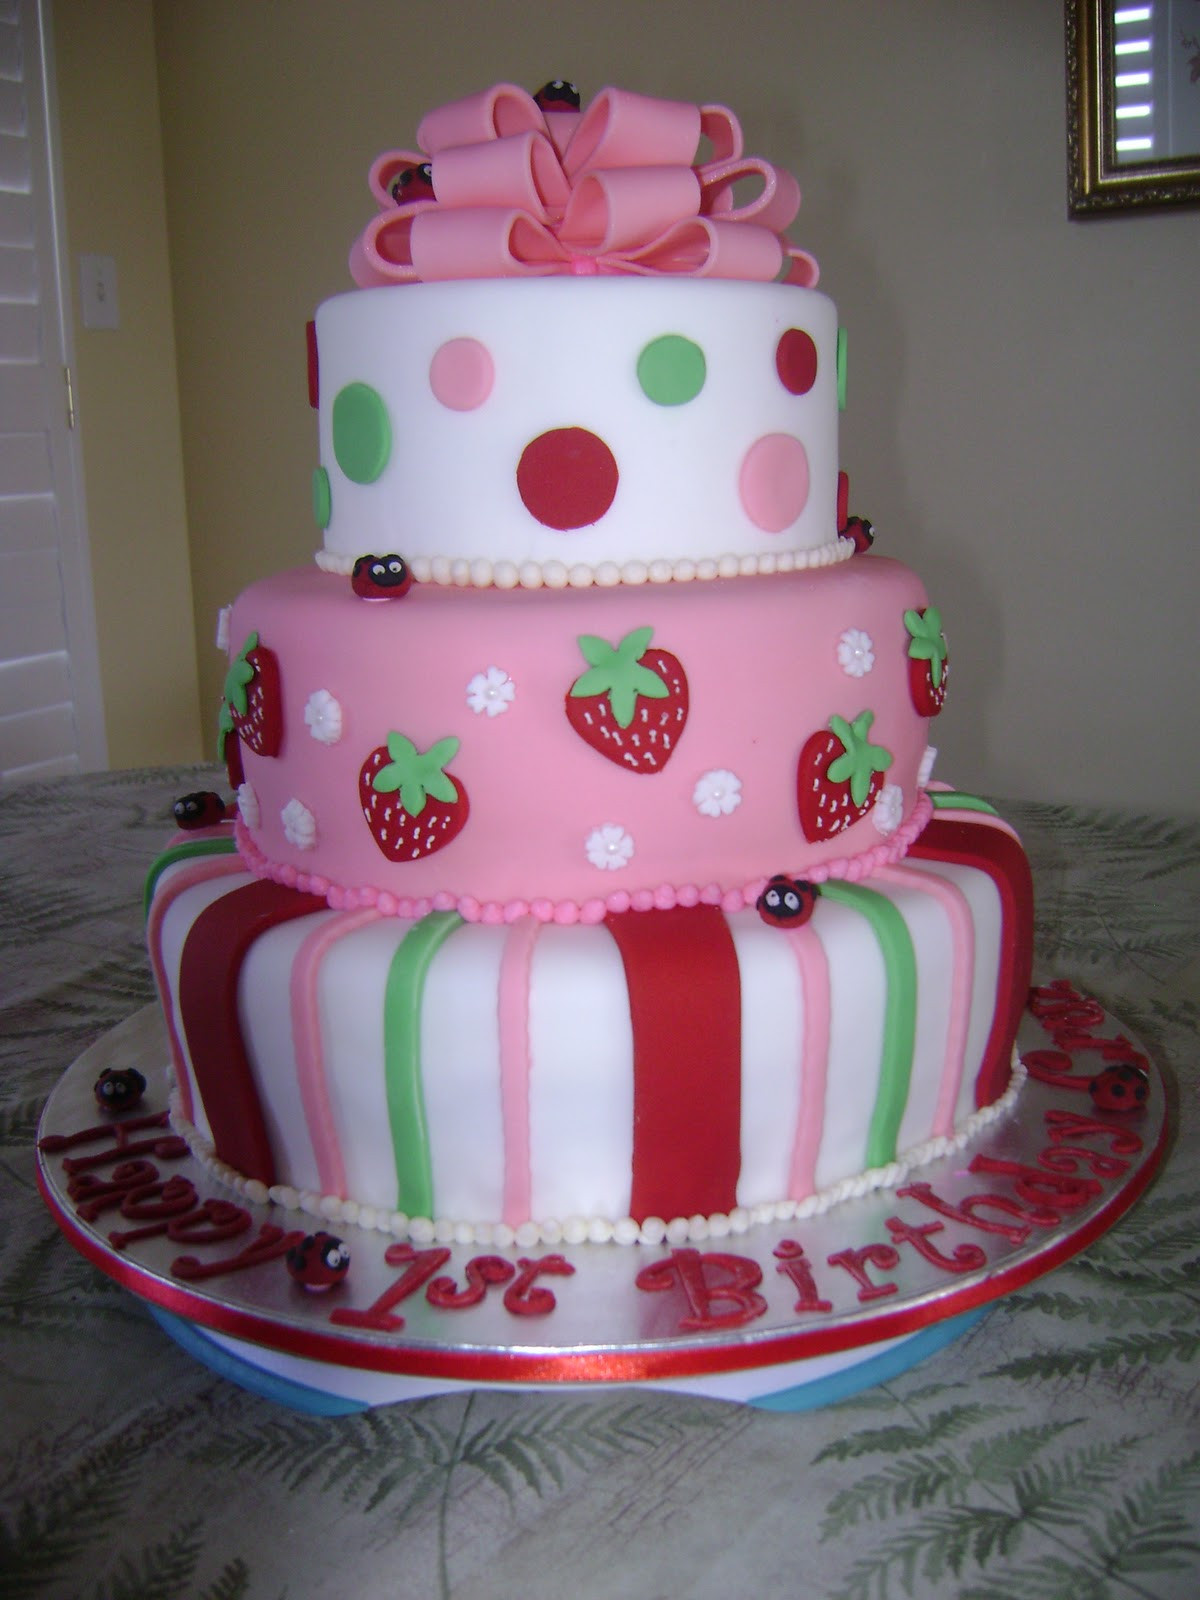 Strawberry Shortcake Birthday Cake
 MaryMel Cakes Strawberry Shortcake 1st Birthday